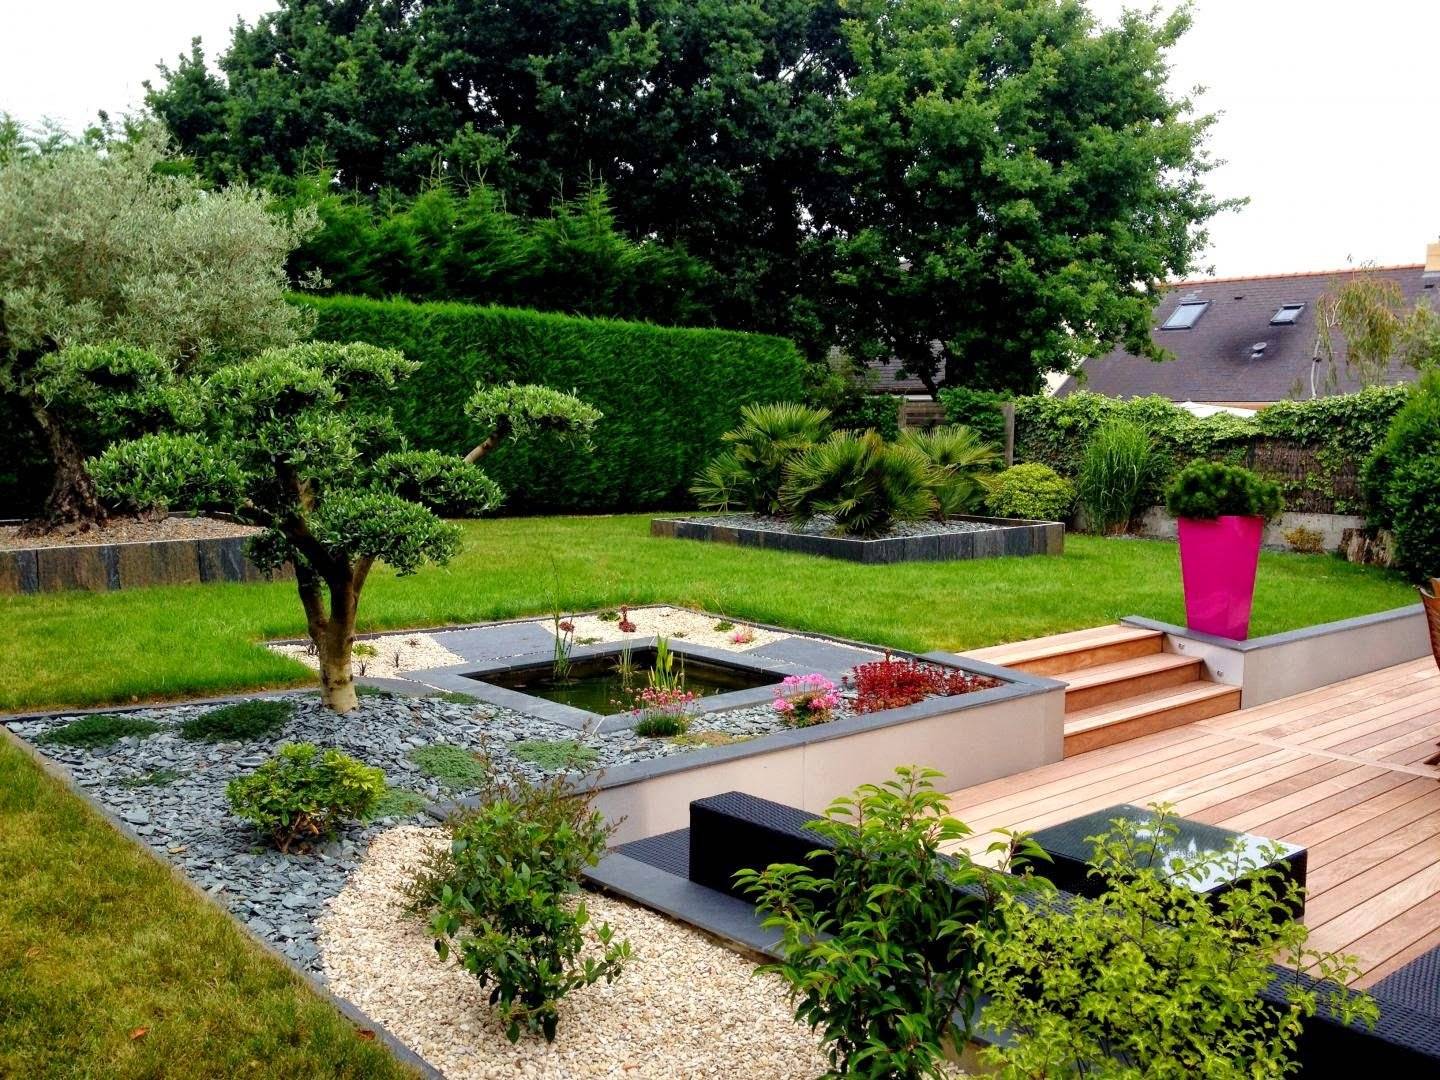 6 главных правил малоуходного сада от ландшафтного дизайнера. как создать сад для ленивых? фото — ботаничка